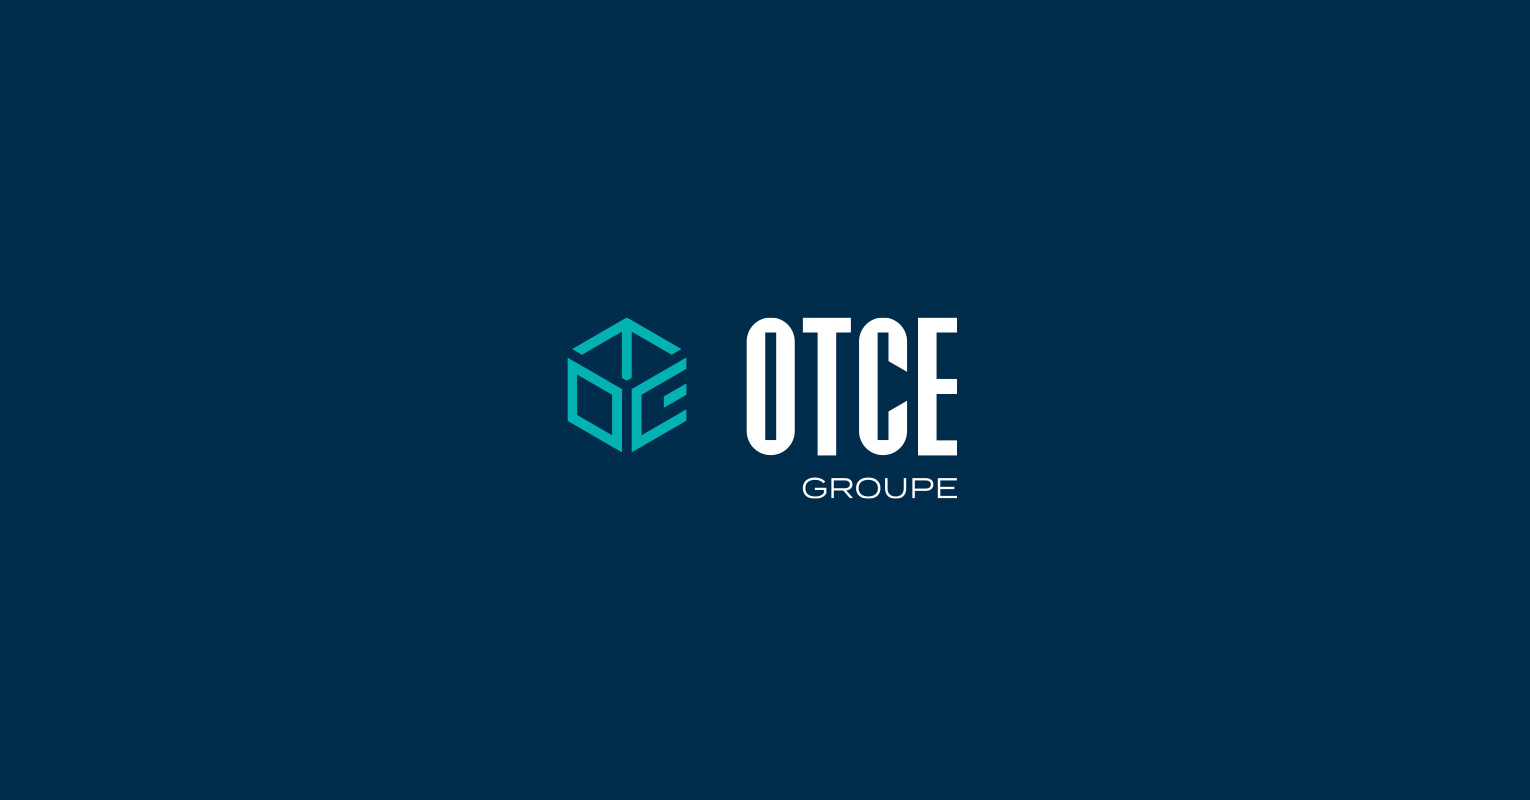 Les supports de communications réalisés pour OTCE groupe